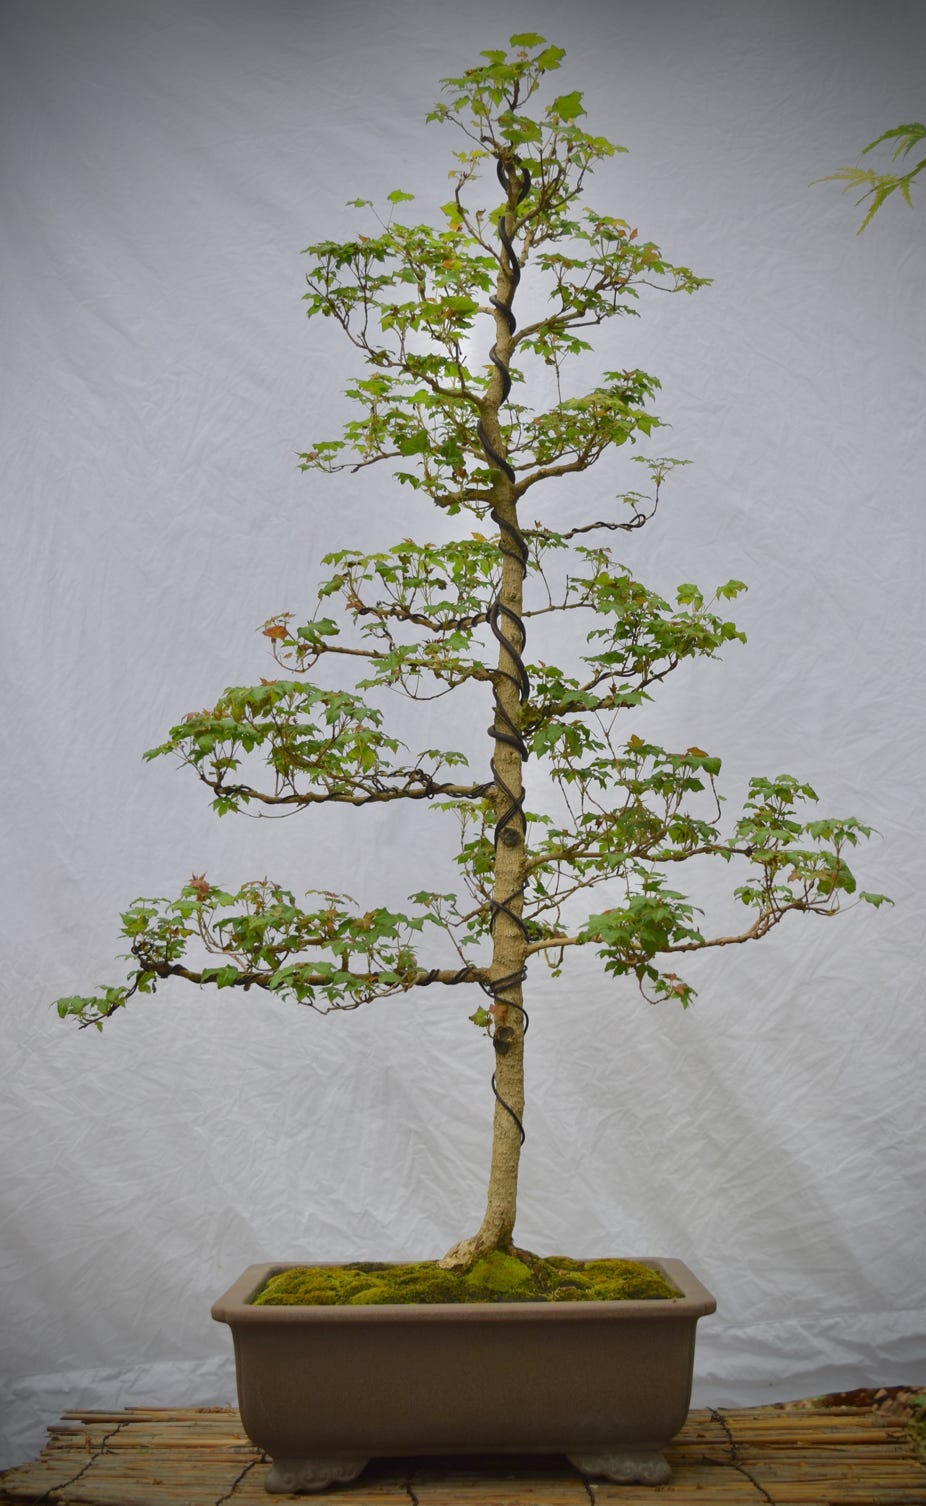 Acer truncatum Flower God dwarf Shandong or Shantung maple bonsai.